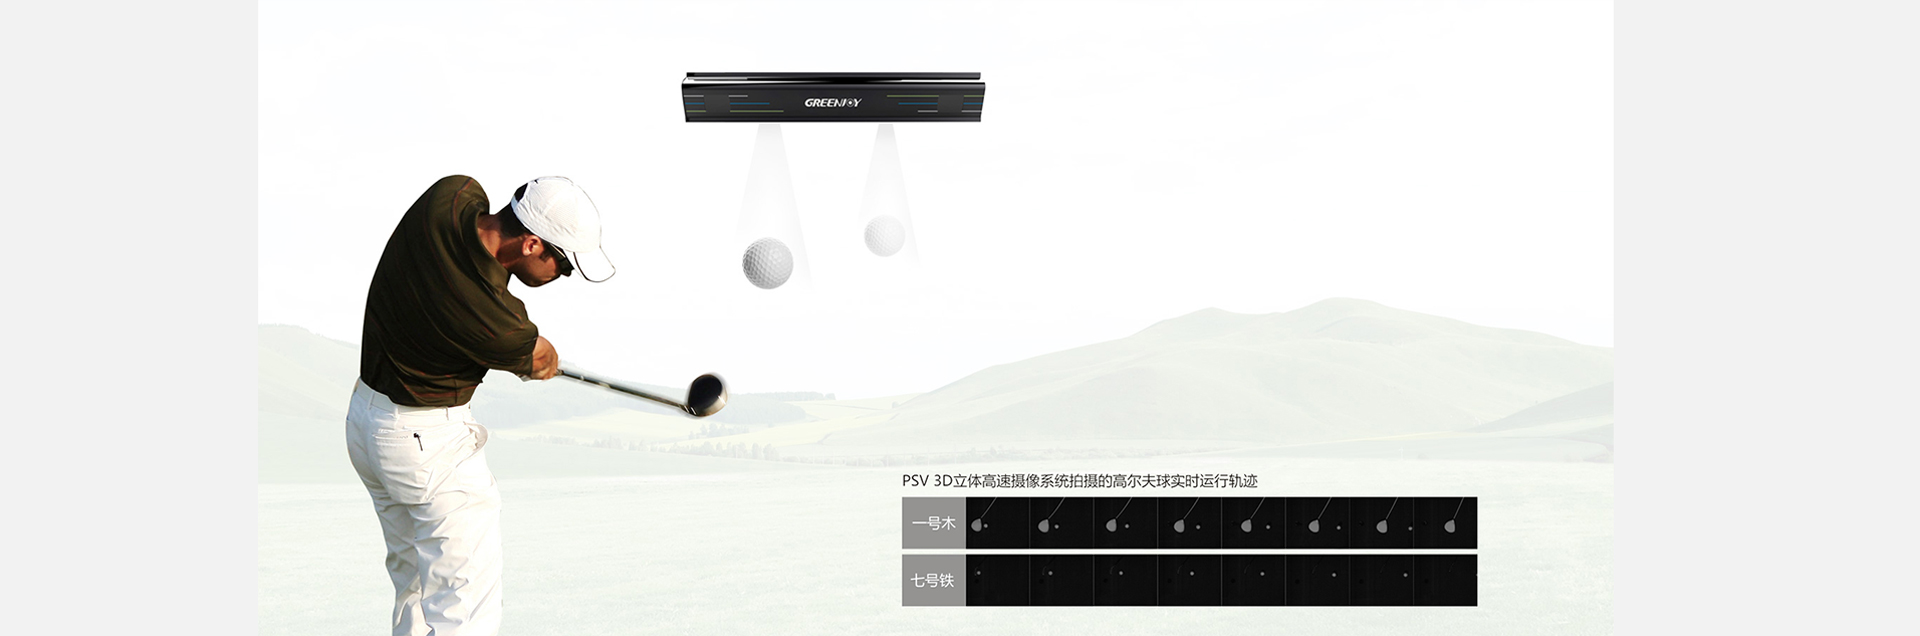 衡泰信高尔夫模拟器PSV感应器.jpg